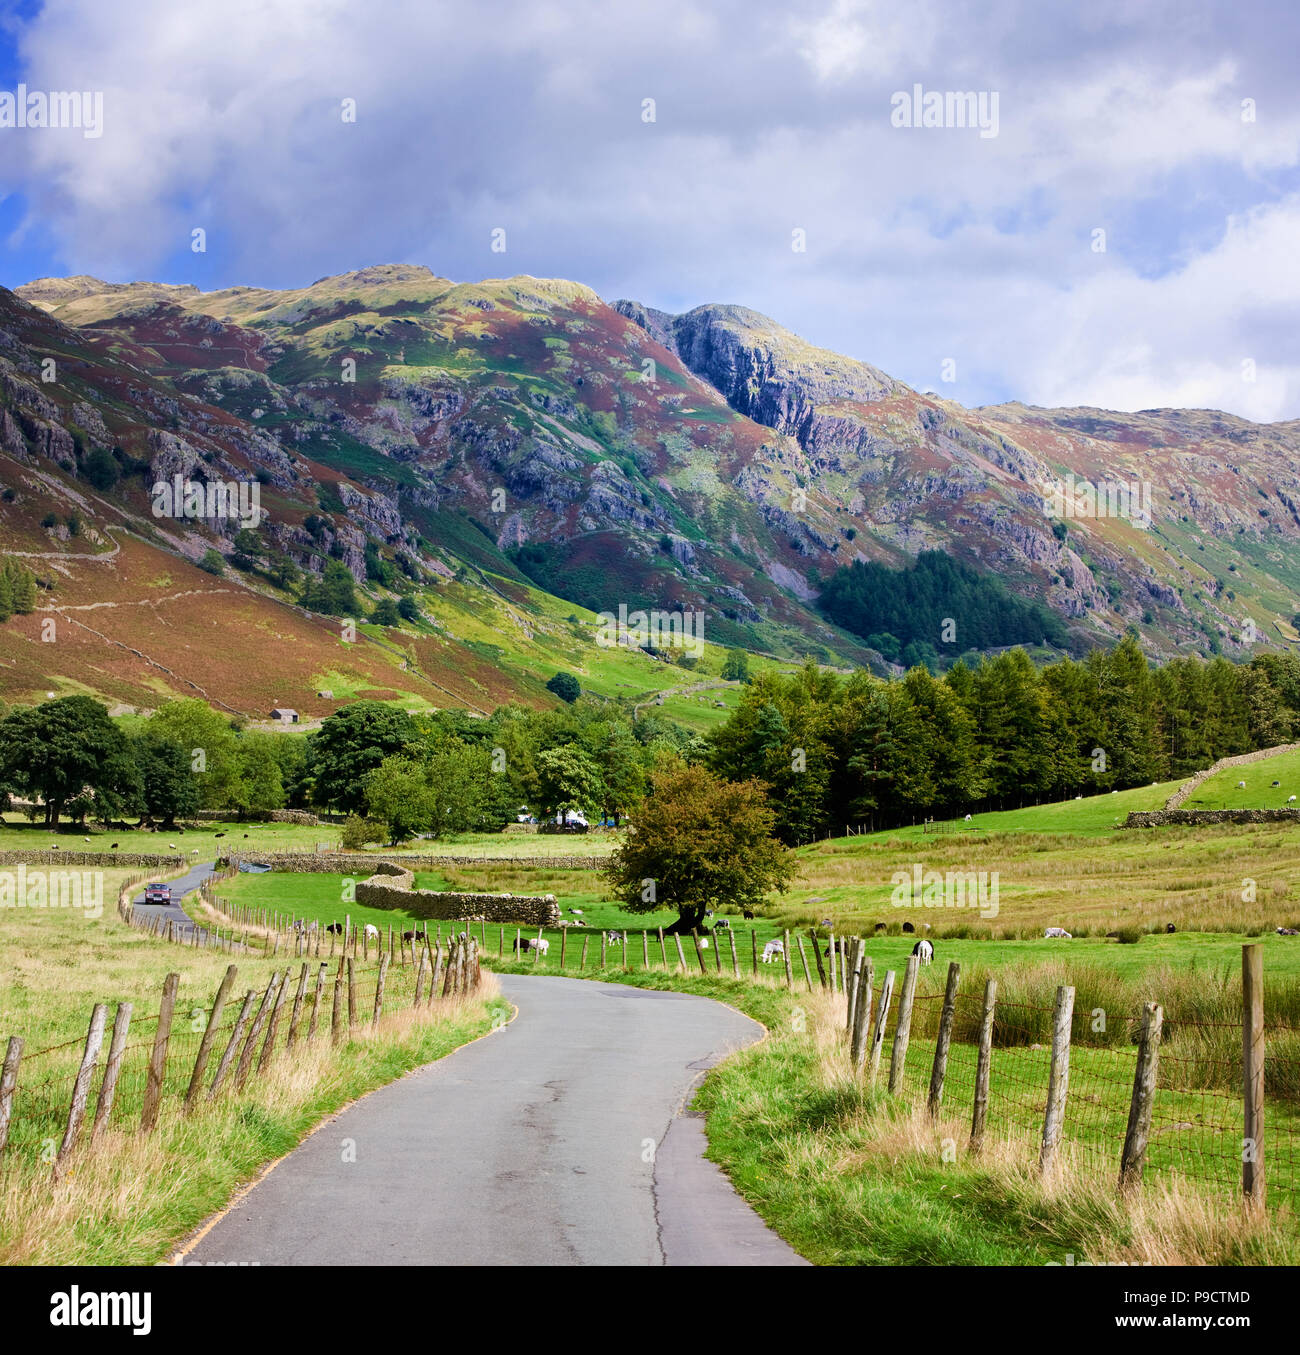 Petite route de campagne sinueuse à travers la vallée de Langdale dans le Parc National du Lake District, Cumbria, England, UK Banque D'Images